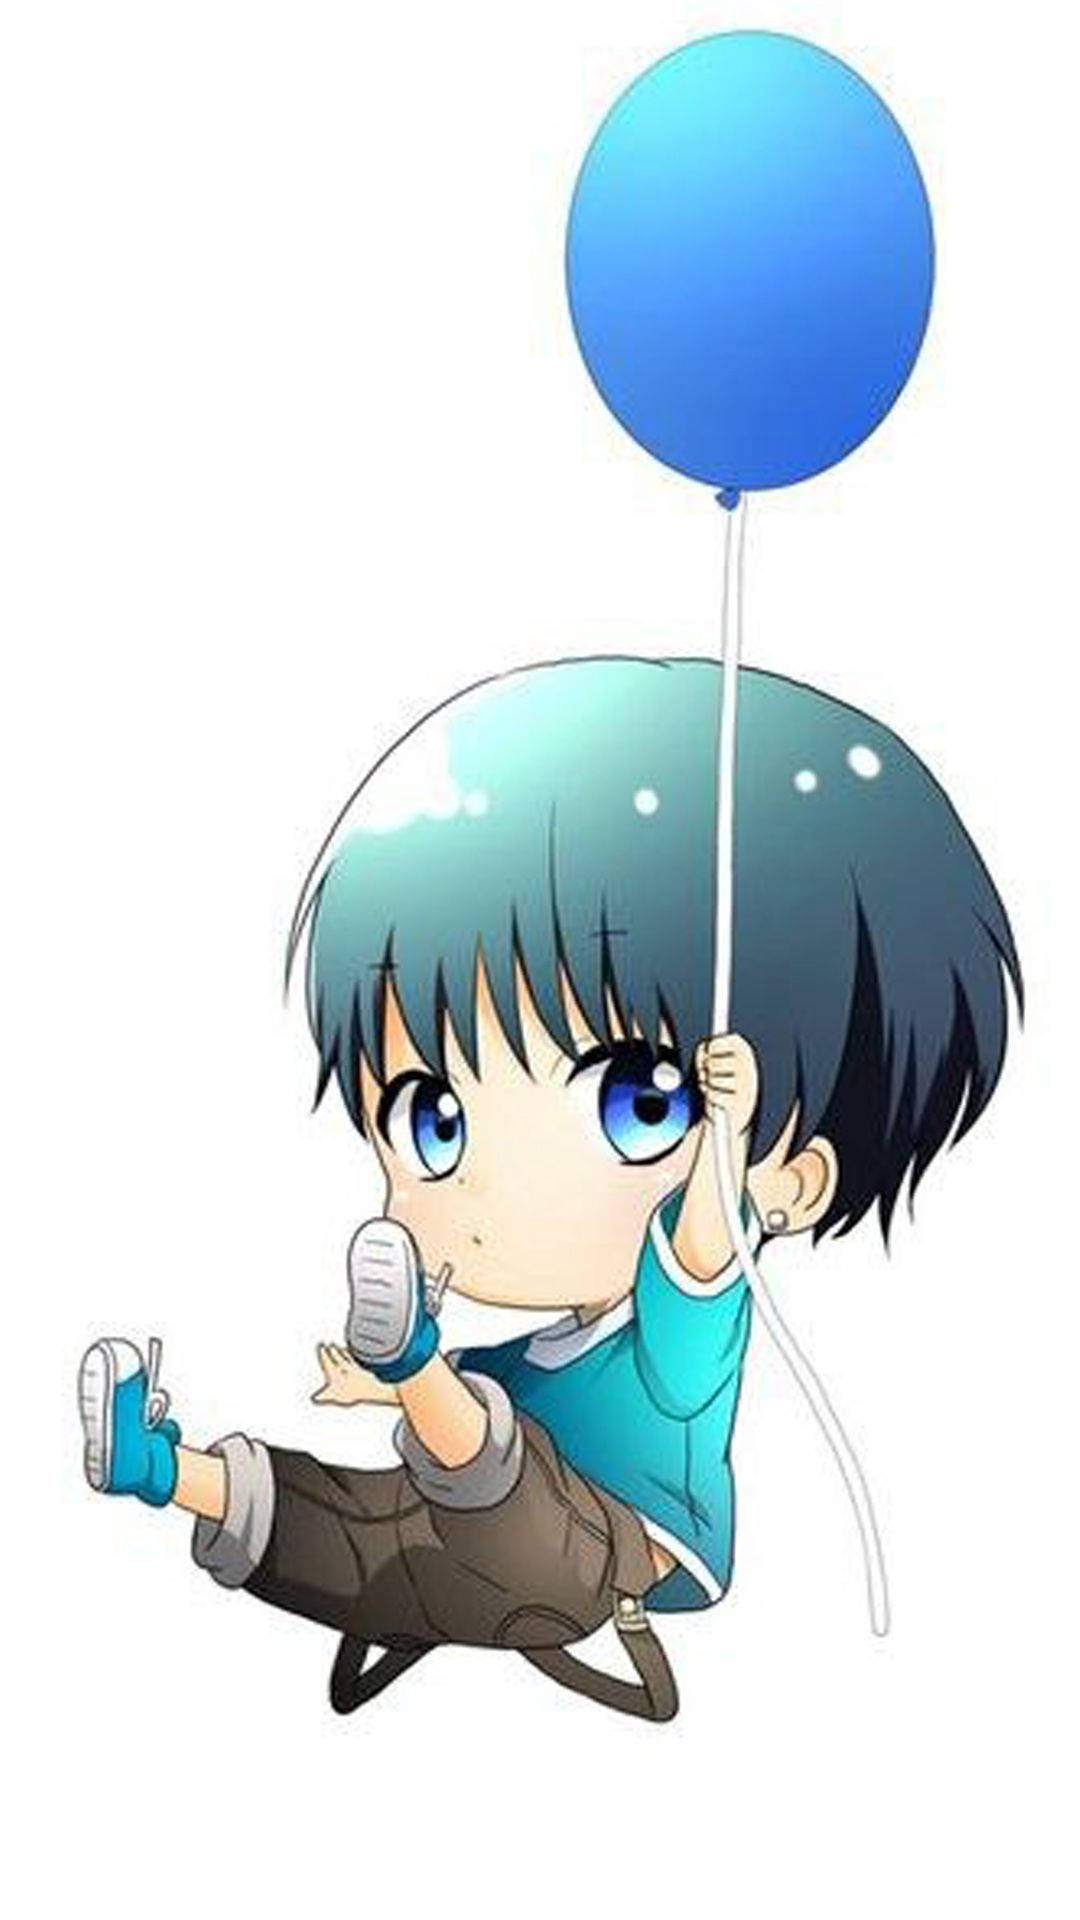 Chibi Cute Boy Cartoon With A Balloon Wallpaper